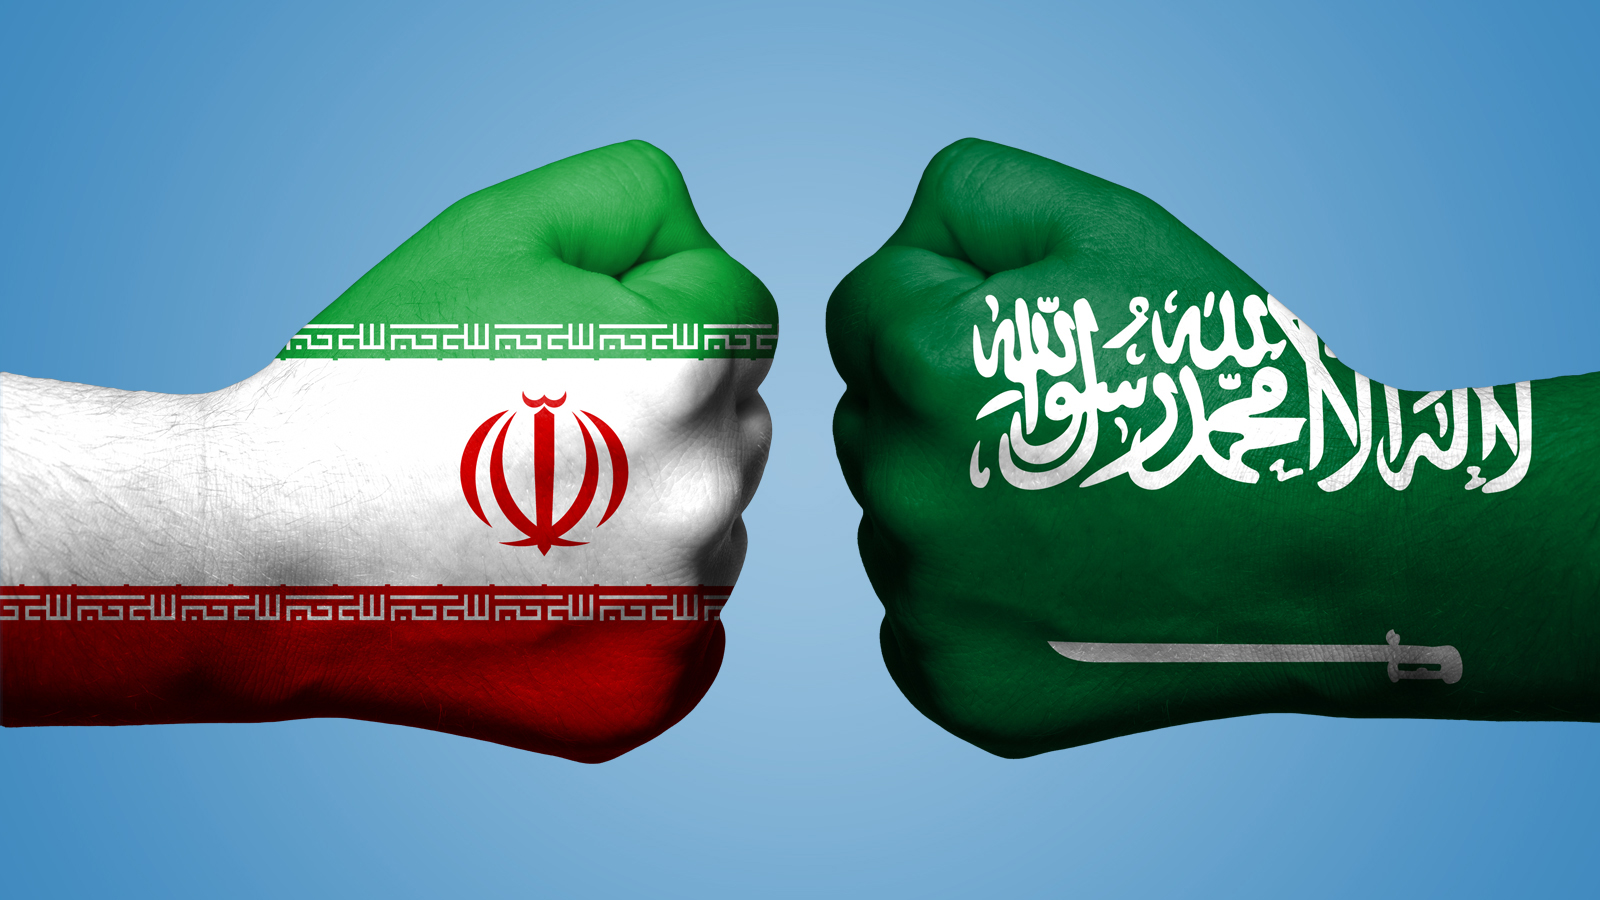 الصراع بين إيران و السعودية ليس مذهبيا، بل هو صراع مدفوع بسياسات القوة والمنافسة على النفوذ الإقليمي